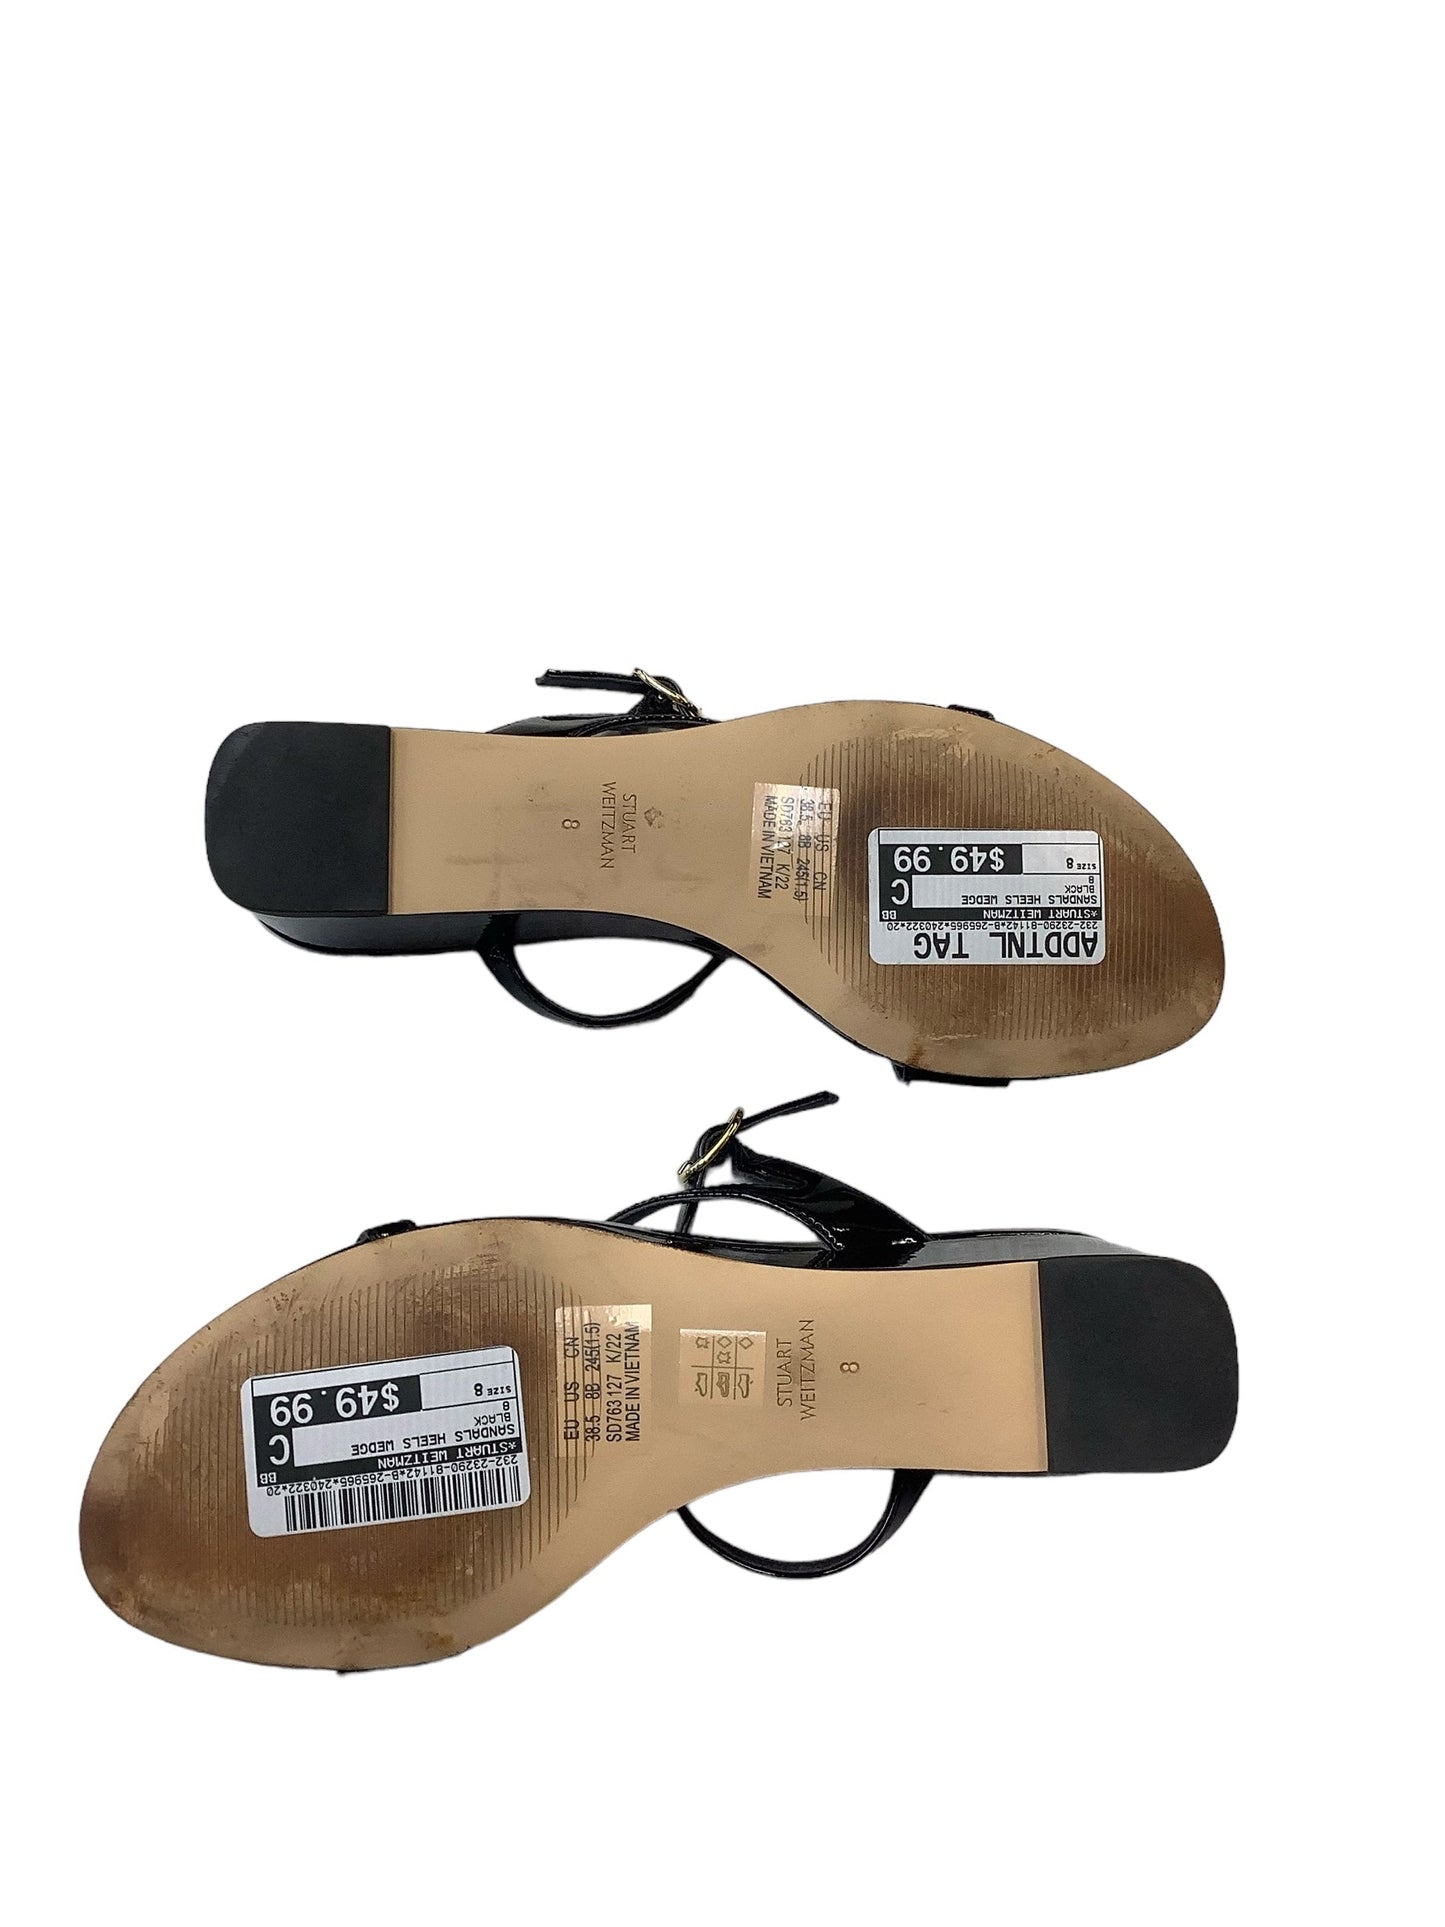 Sandals Heels Wedge By Stuart Weitzman  Size: 8